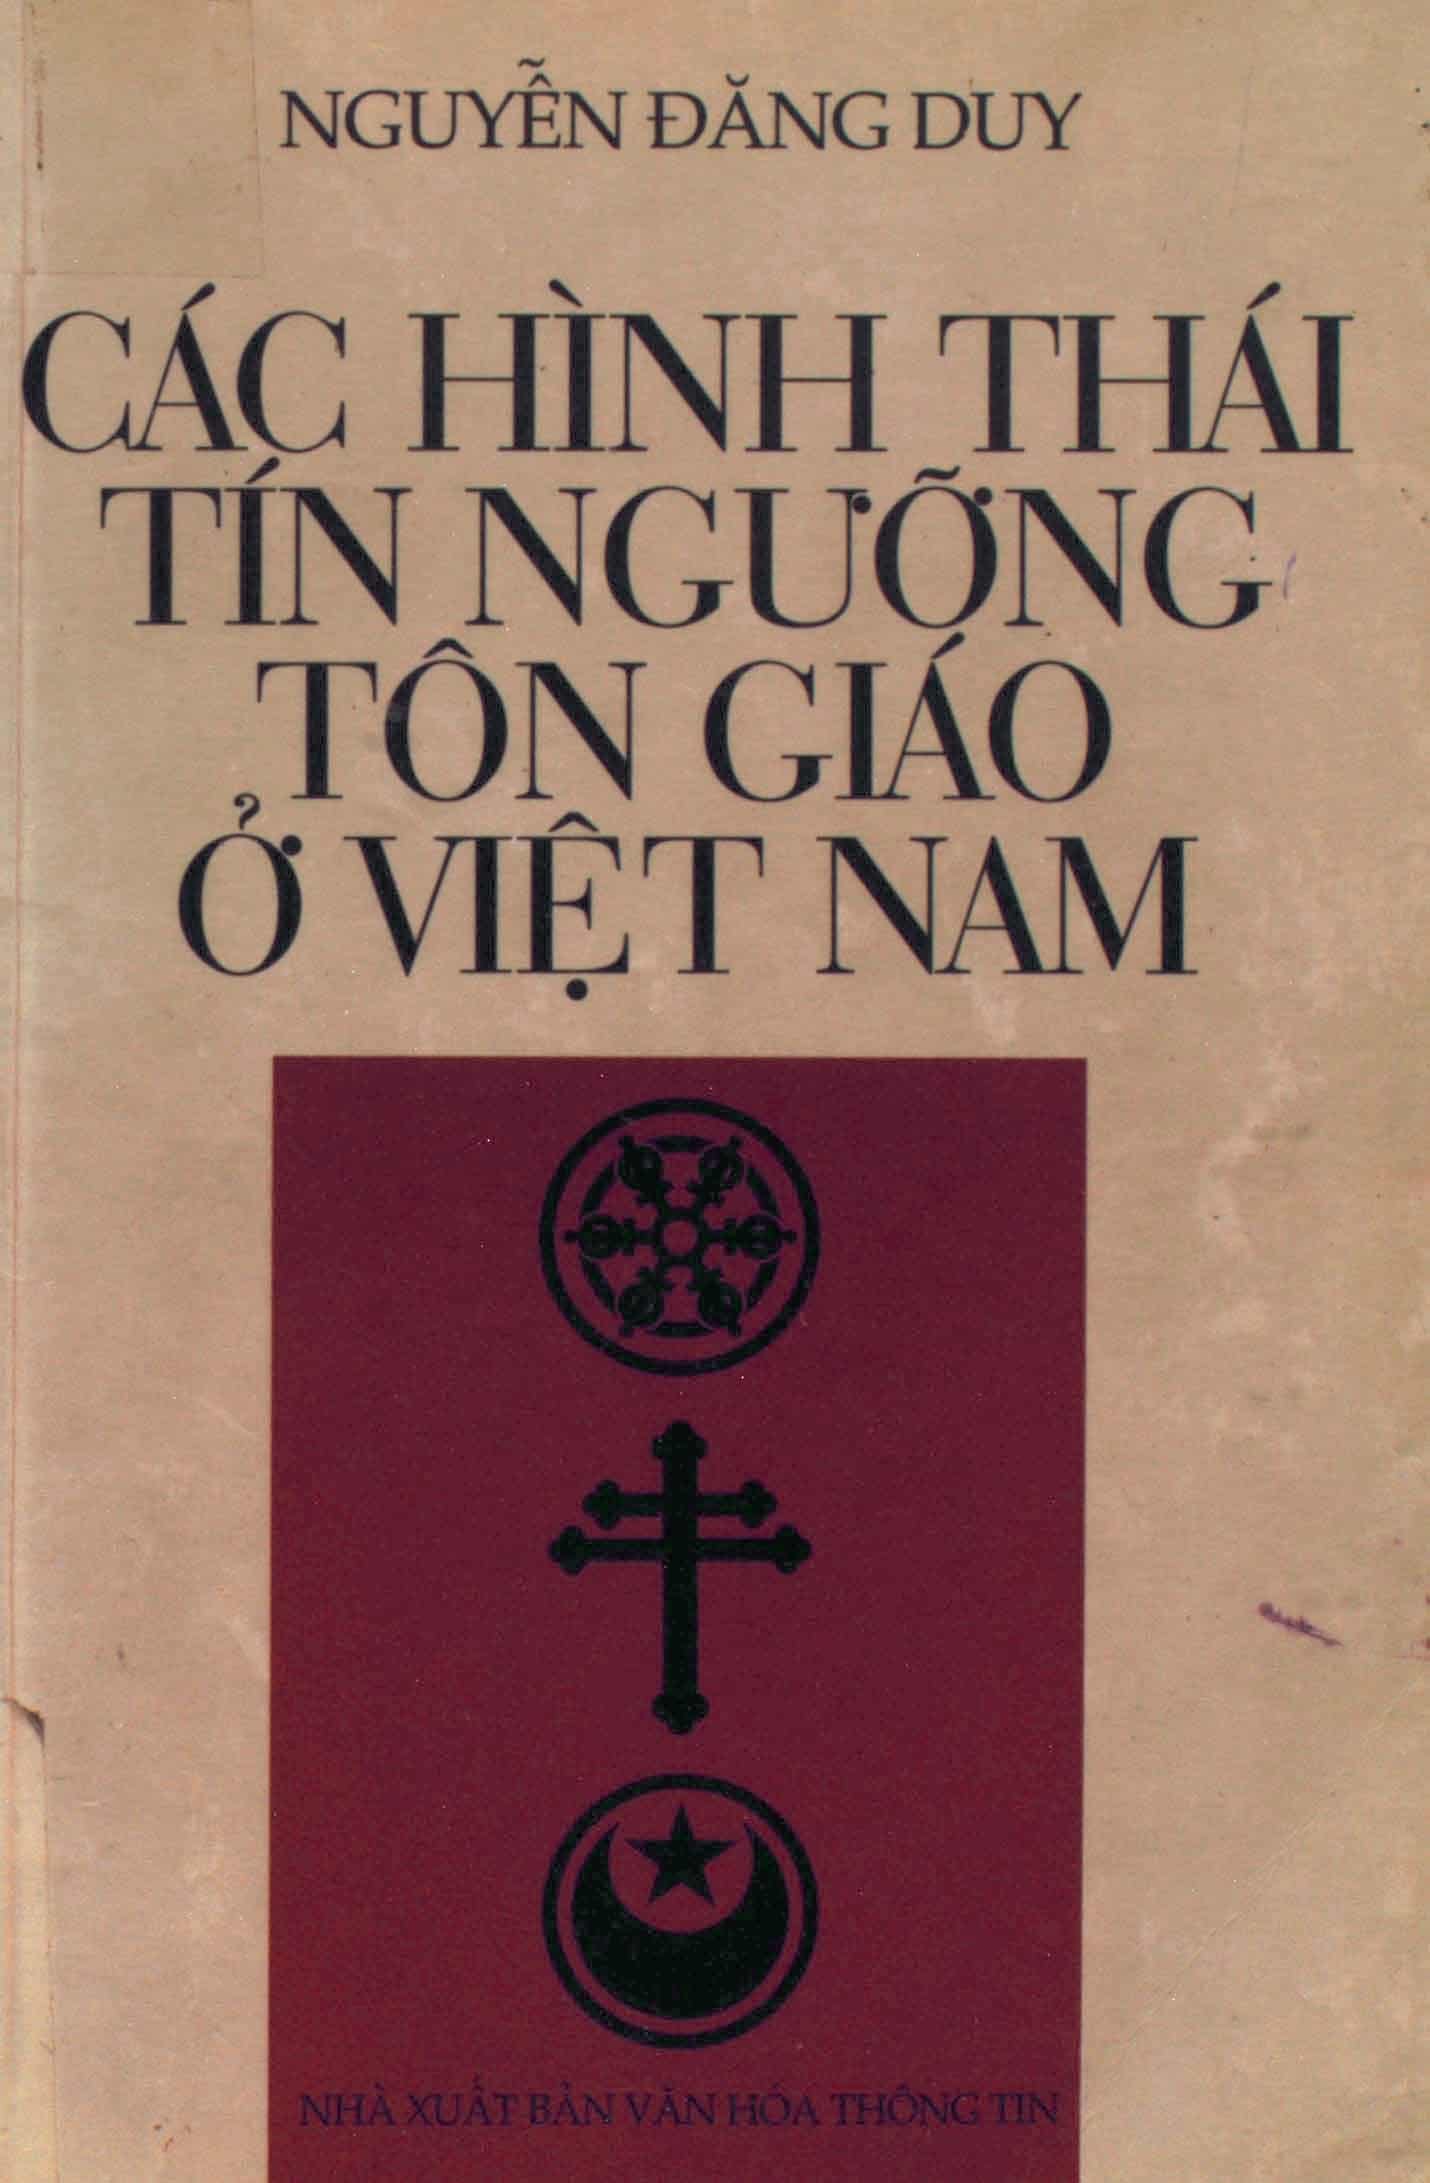 Các Hình Thái Tín Ngưỡng Tôn Giáo Ở Việt Nam